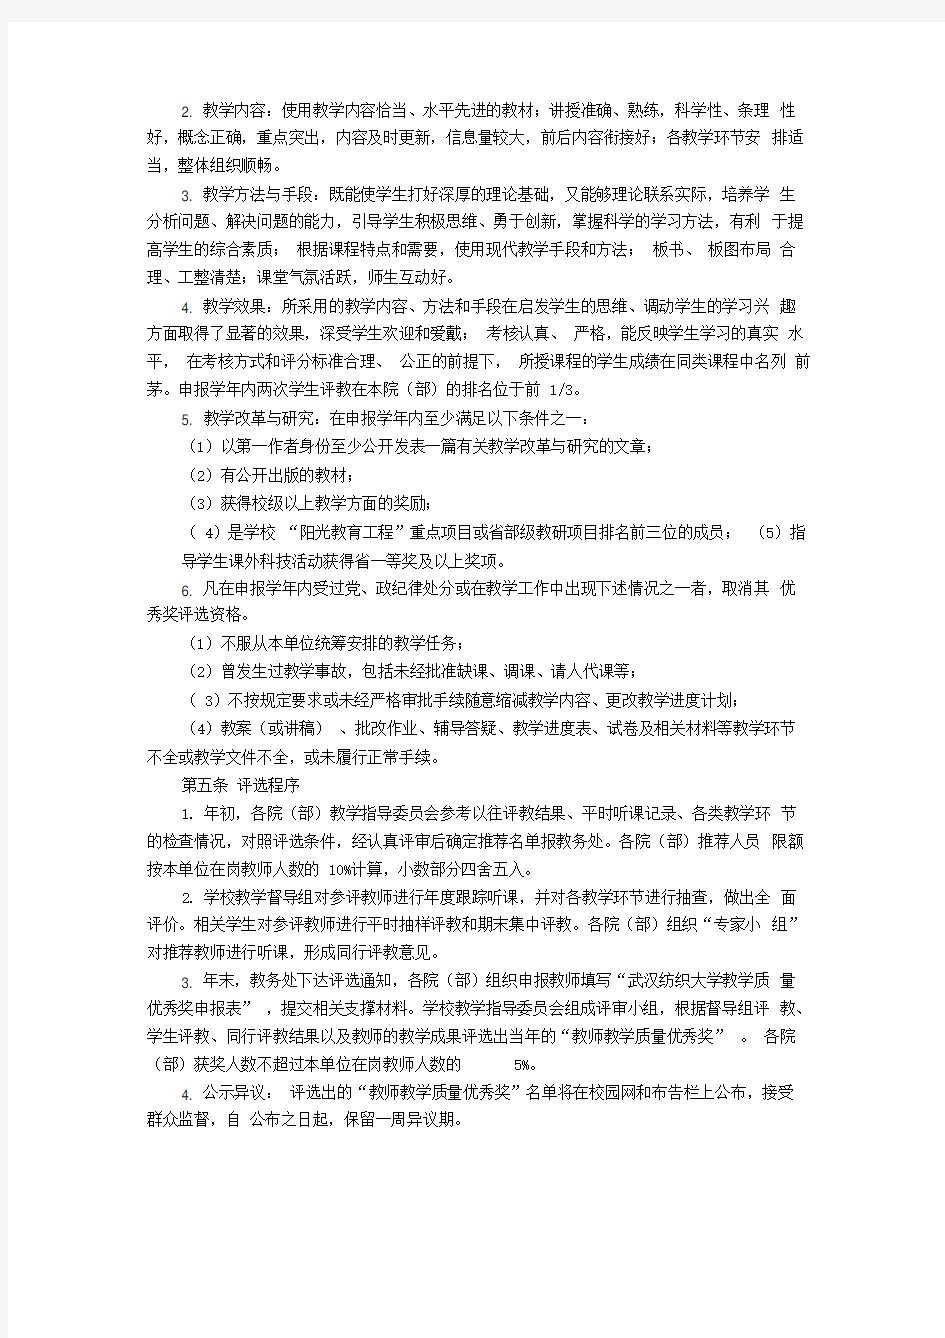 武汉纺织大学教师教学质量优秀奖评选办法